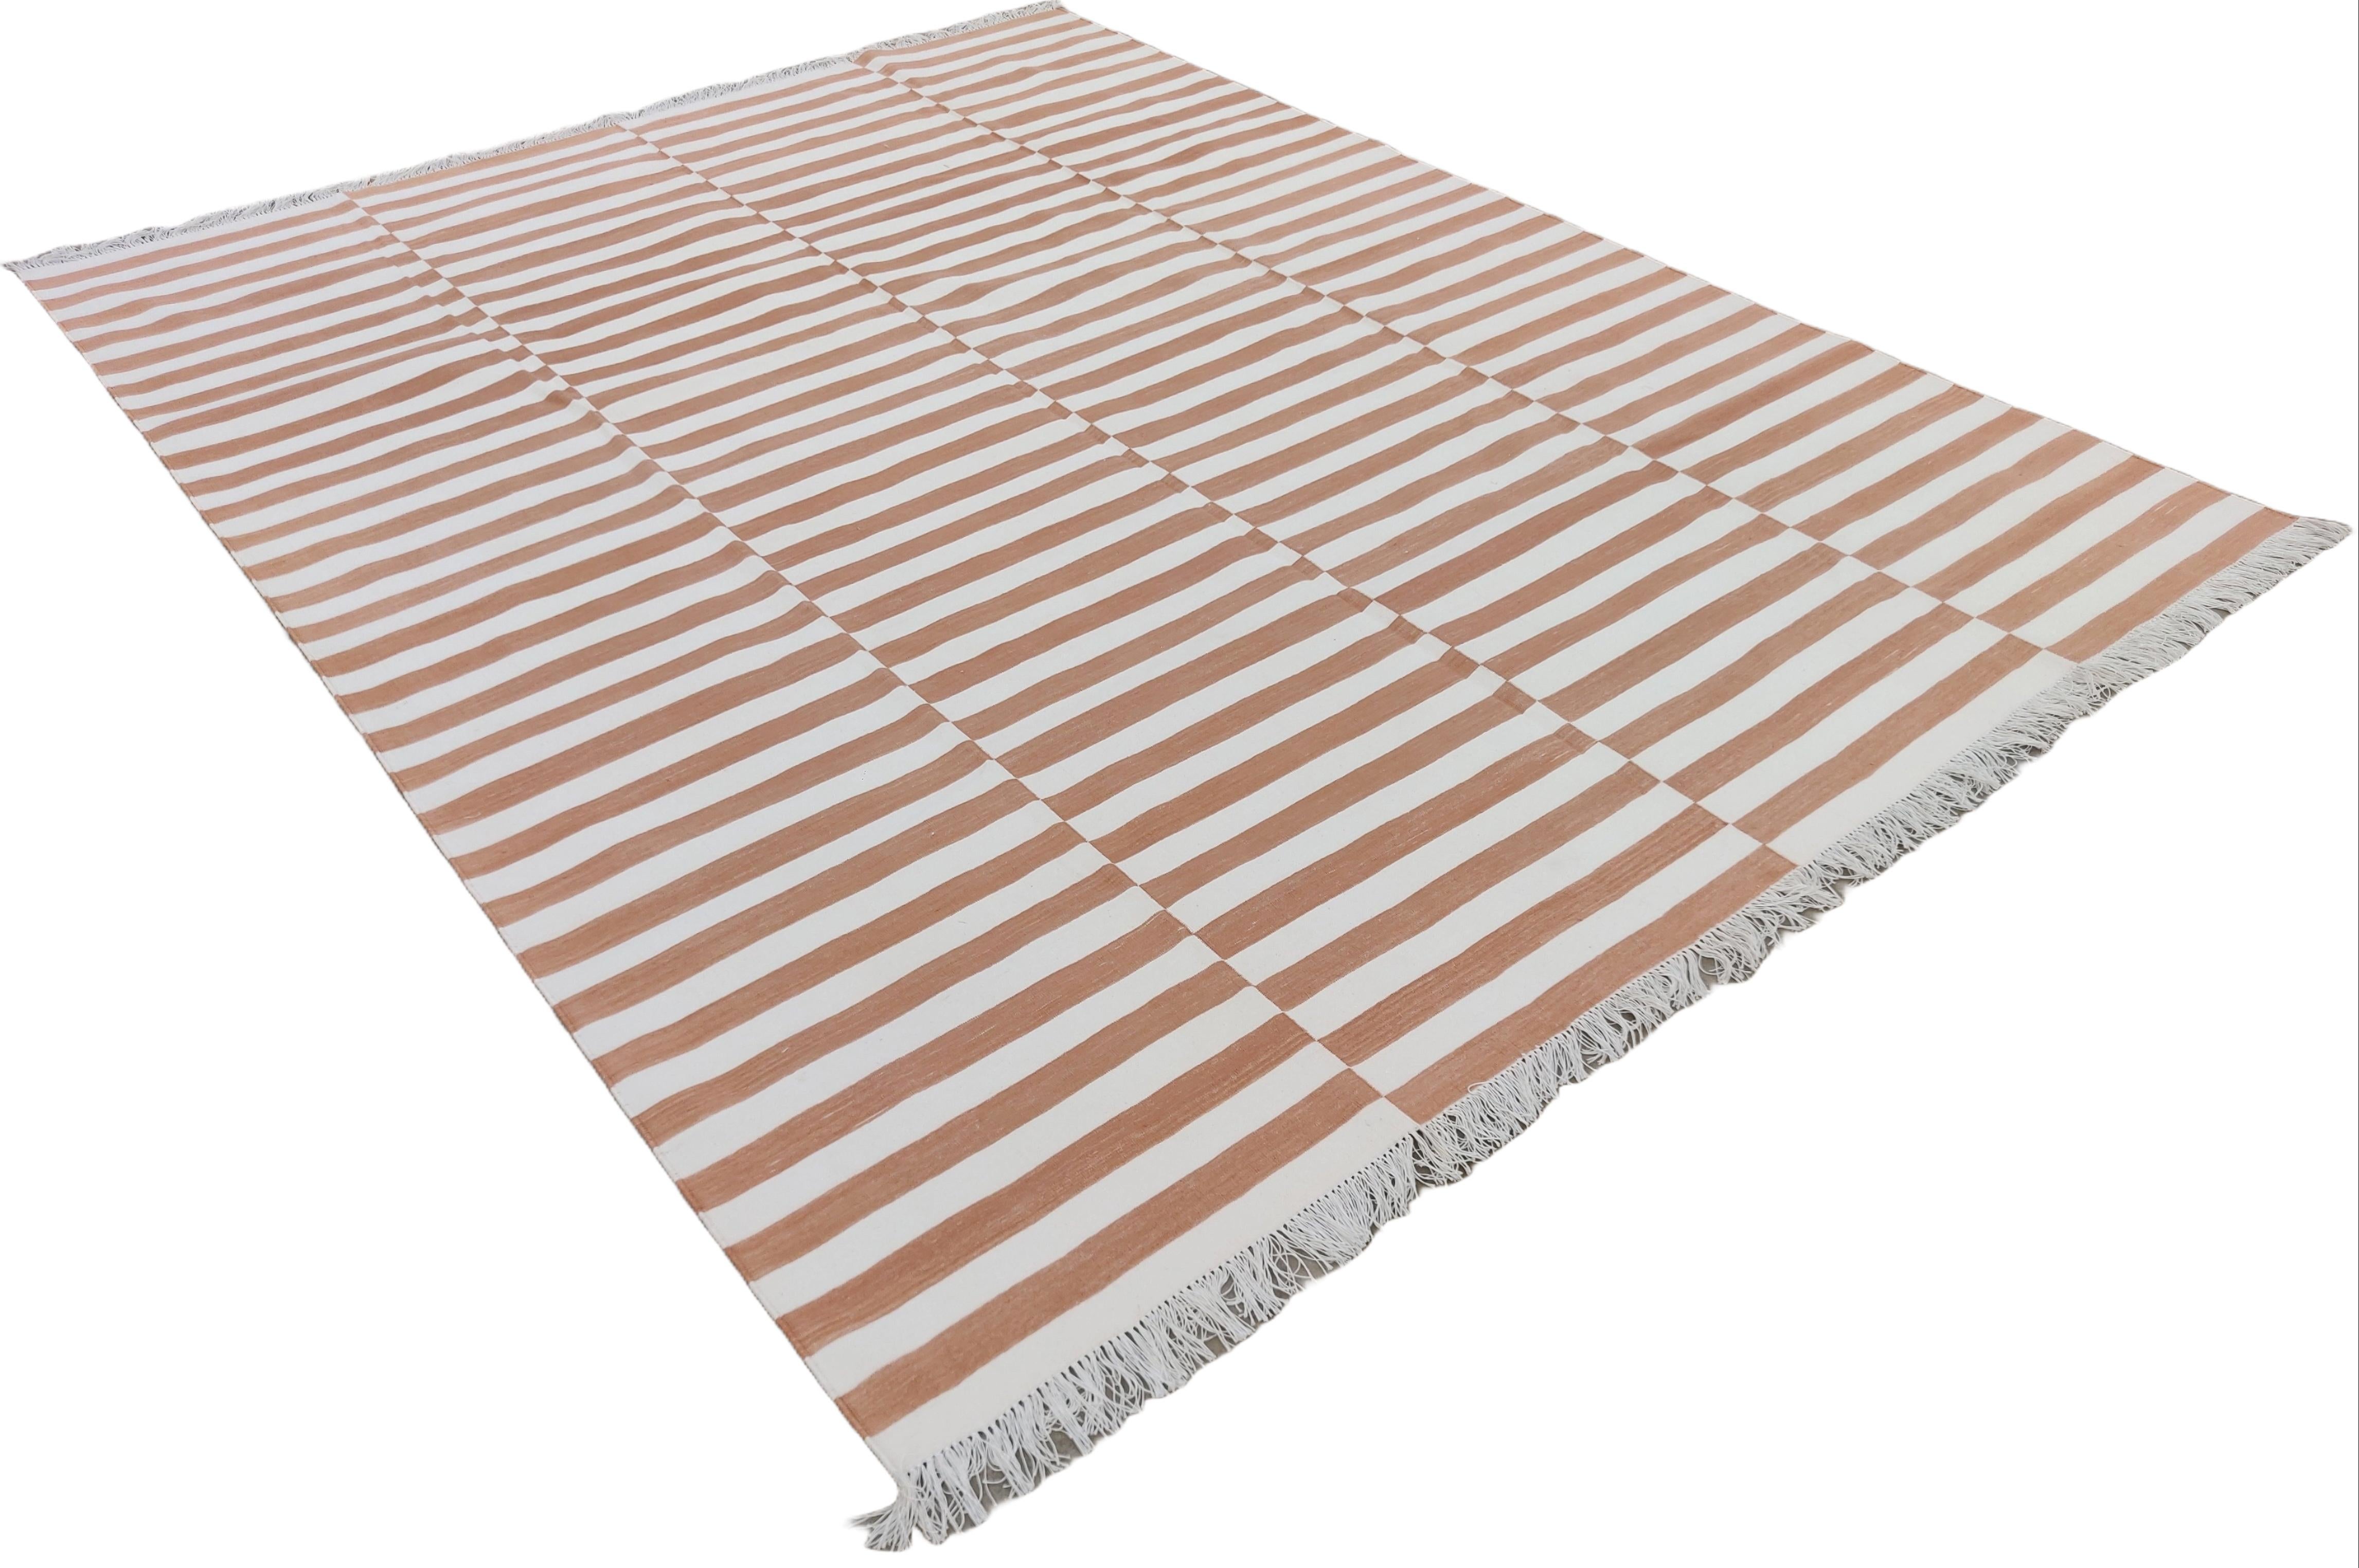 Vegetabil gefärbte Baumwolle Reversible Tan und weiß gestreiften indischen Dhurrie Teppich - 8'x10'
Diese speziellen flachgewebten Dhurries werden aus 15-fachem Garn aus 100% Baumwolle handgewebt. Aufgrund der speziellen Fertigungstechniken, die zur